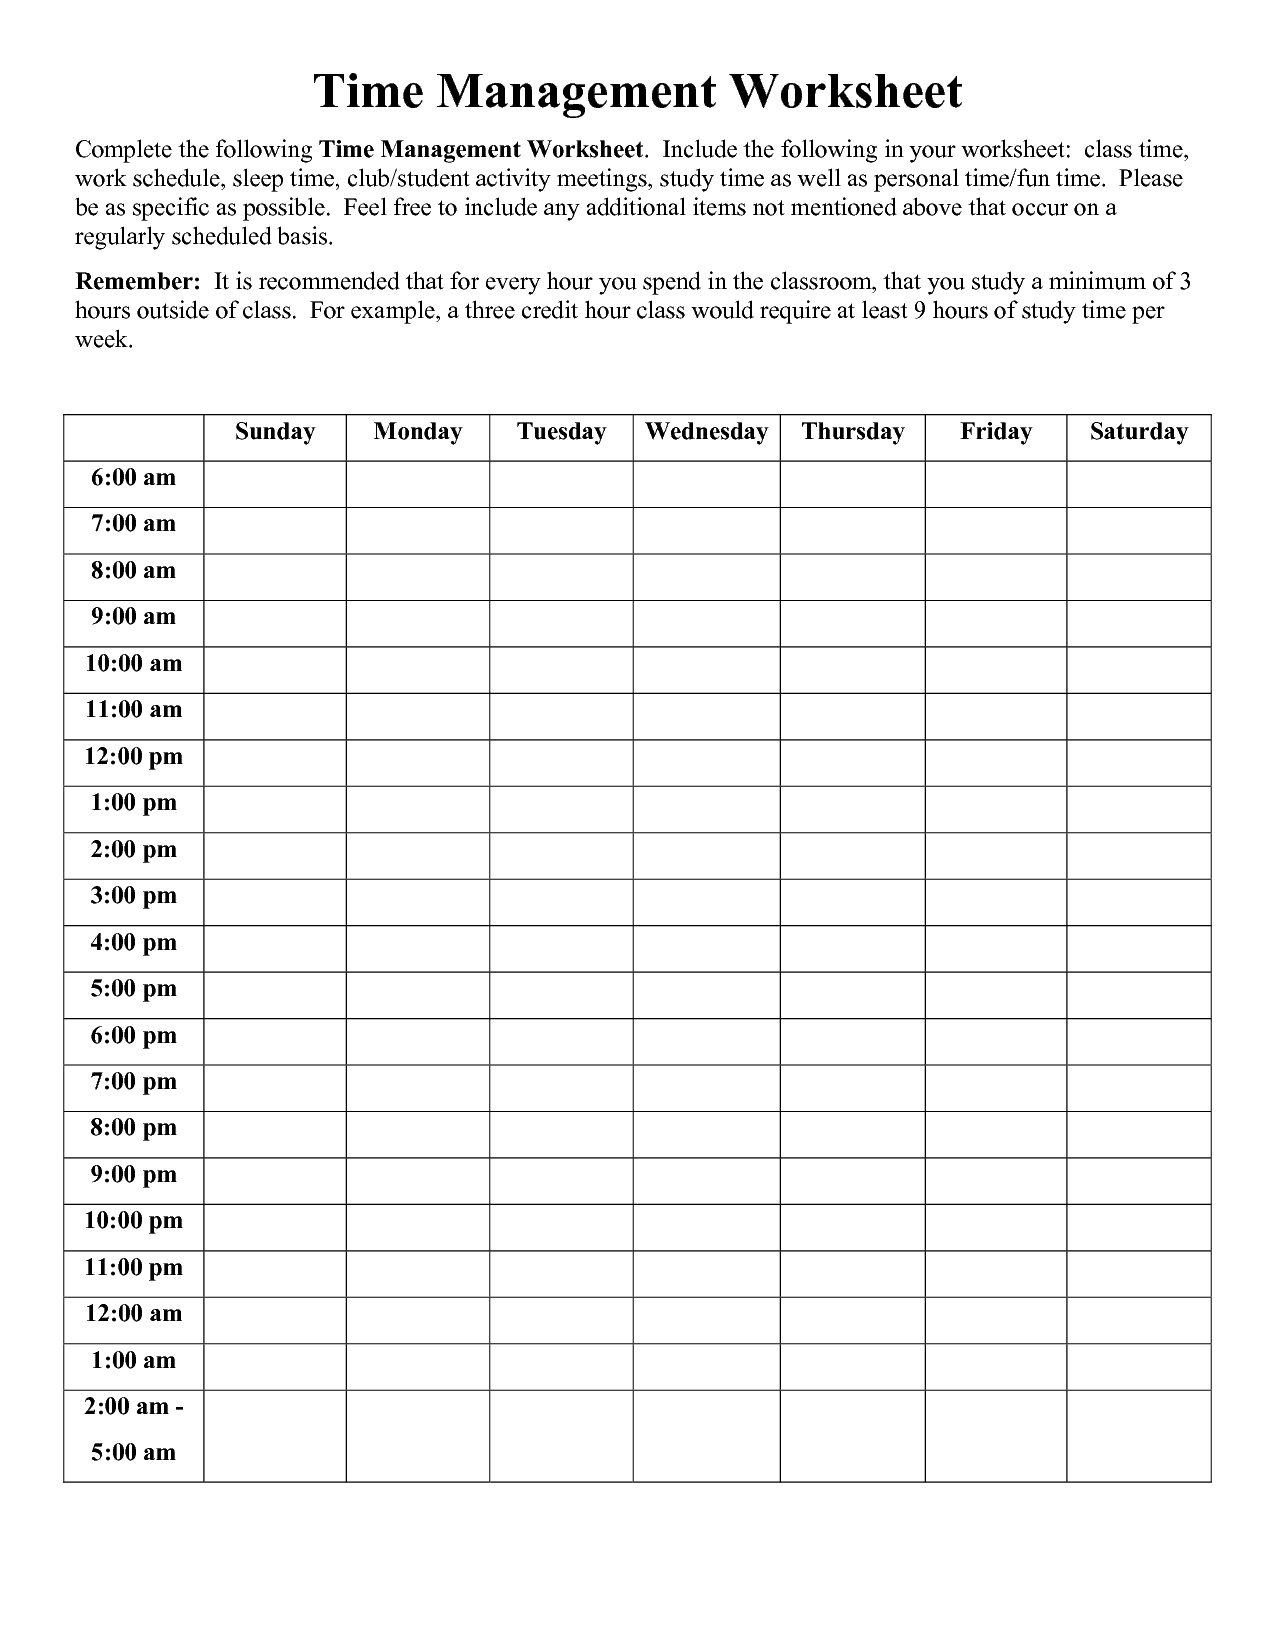 Time Management Worksheet Pdf | Sophia | Time Management Worksheet - Free Printable Time Tracking Sheets